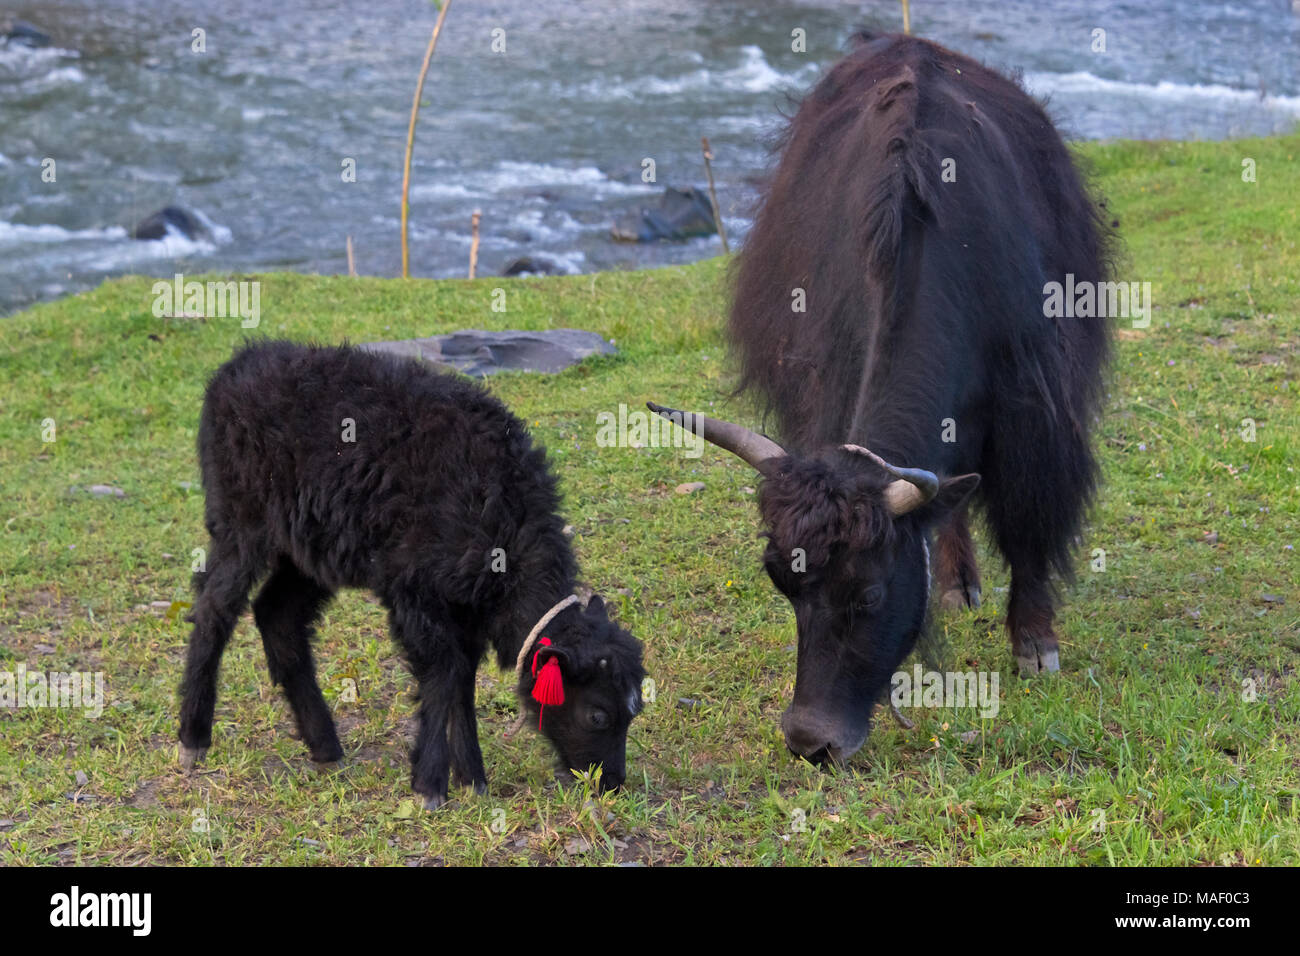 Baby yak mit Mutter auf dem Gras, Xinduqiao, westliches Sichuan, China Stockfoto